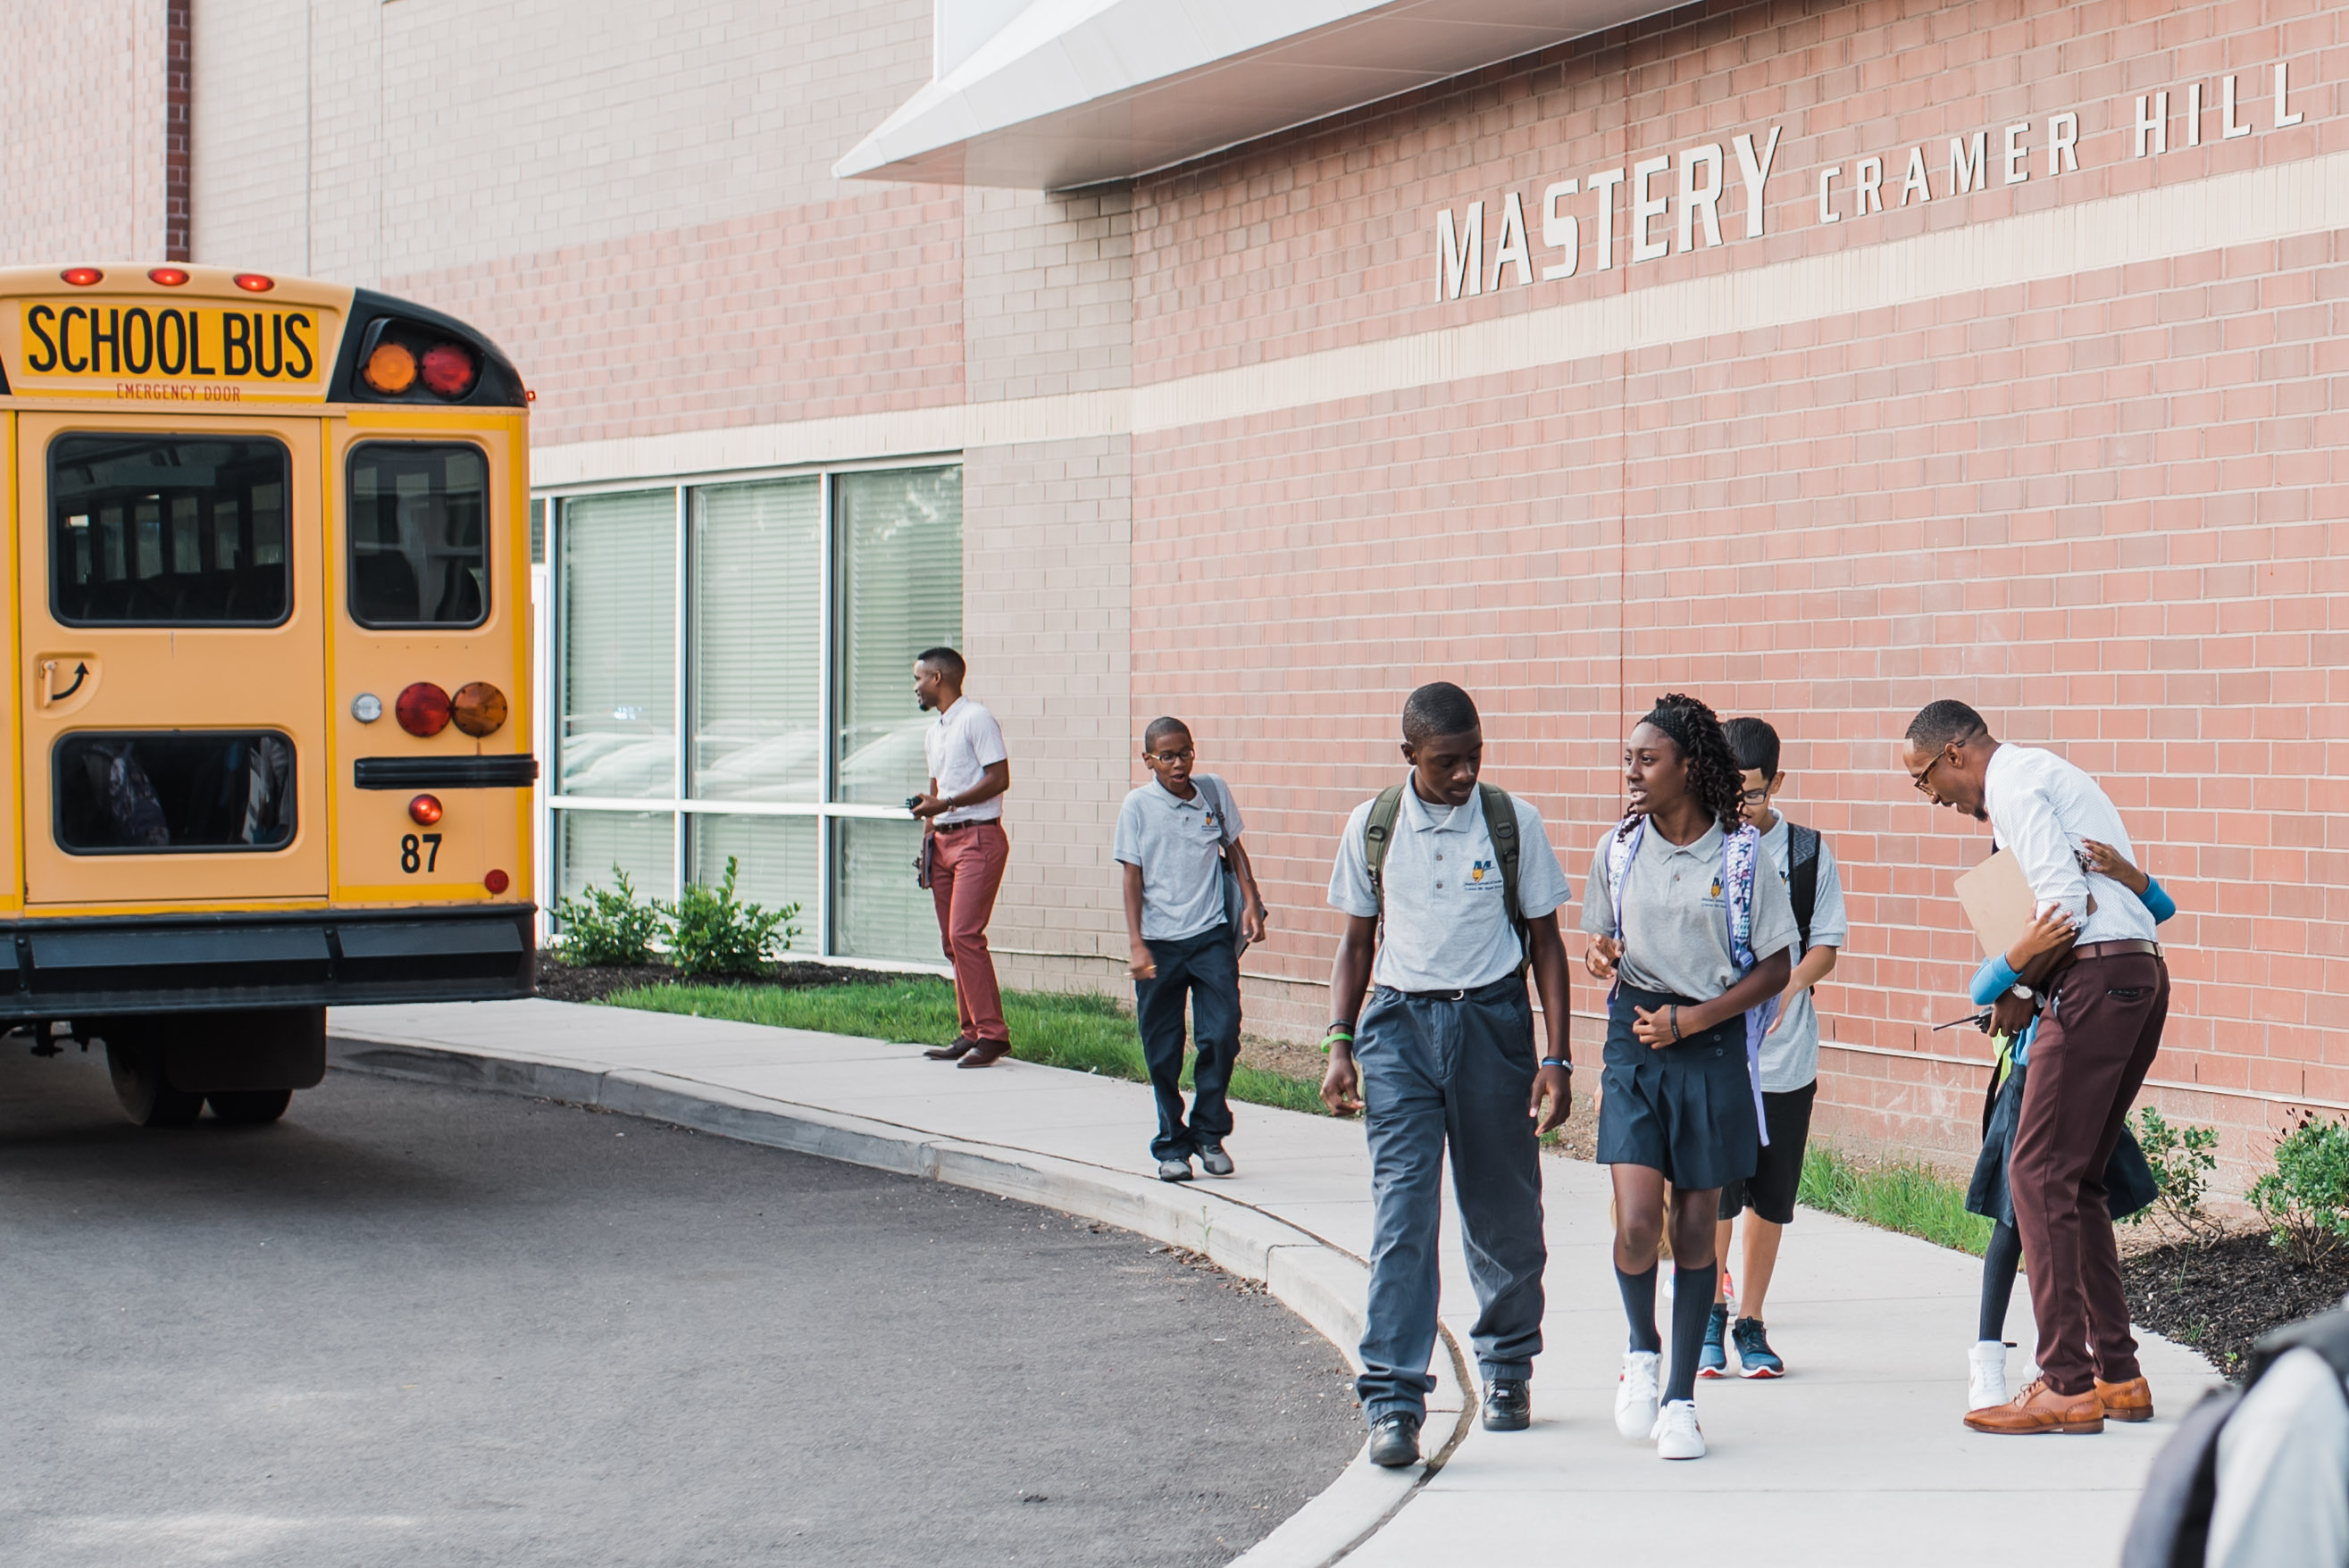 Students walk along the sidewalk beside a school bus in front of a school.